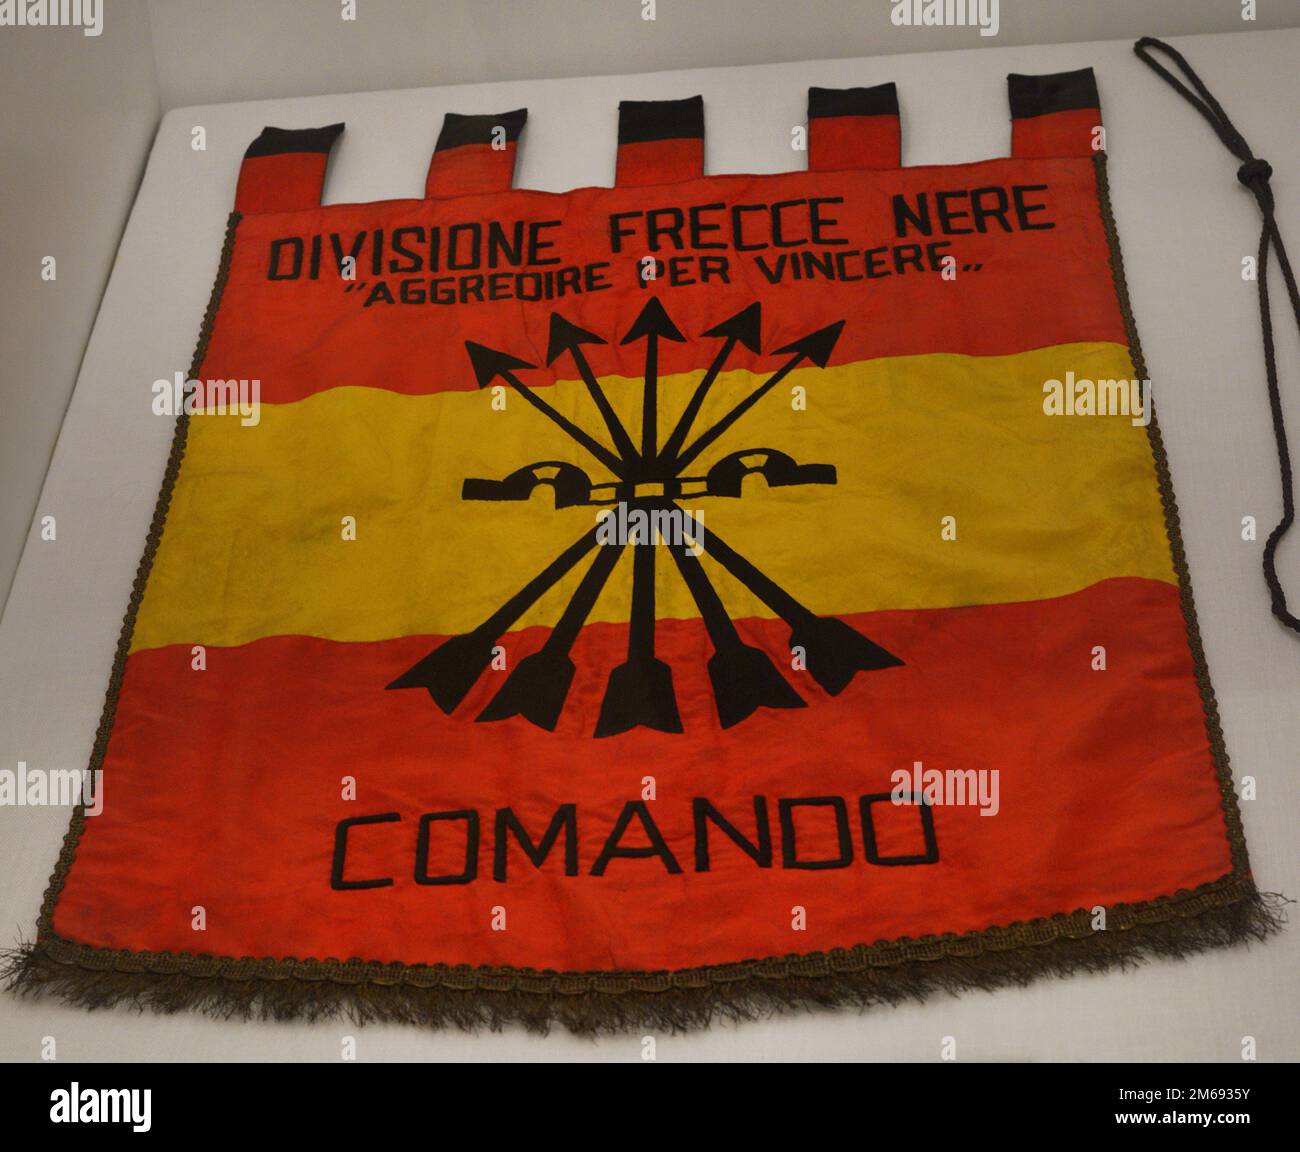 Spanischer Bürgerkrieg (1936-1938). Banner des Befehlshabers der Black Arrows Division (Flechas Negras Division), 1938. Seide, Baumwolle und Metallfäden. Armeemuseum. Toledo, Spanien. Stockfoto